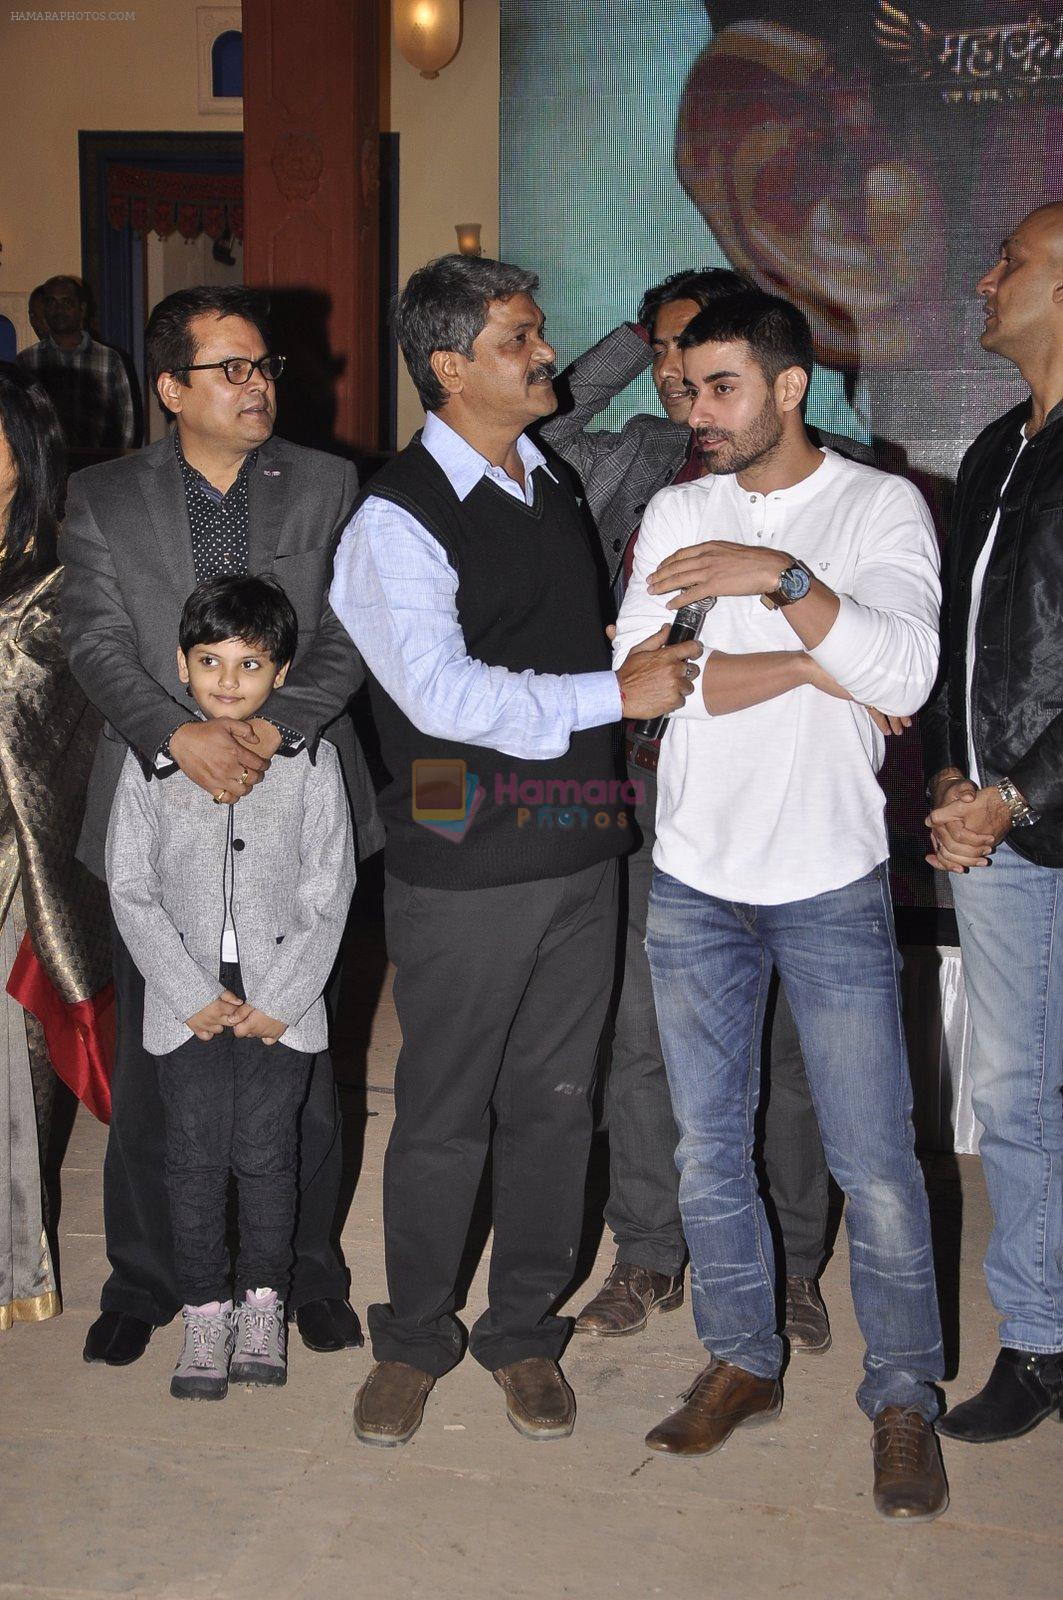 Gautam Rode at Life Ok mahakumbh serial launch in Filmcity, Mumbai on 15th Dec 2014